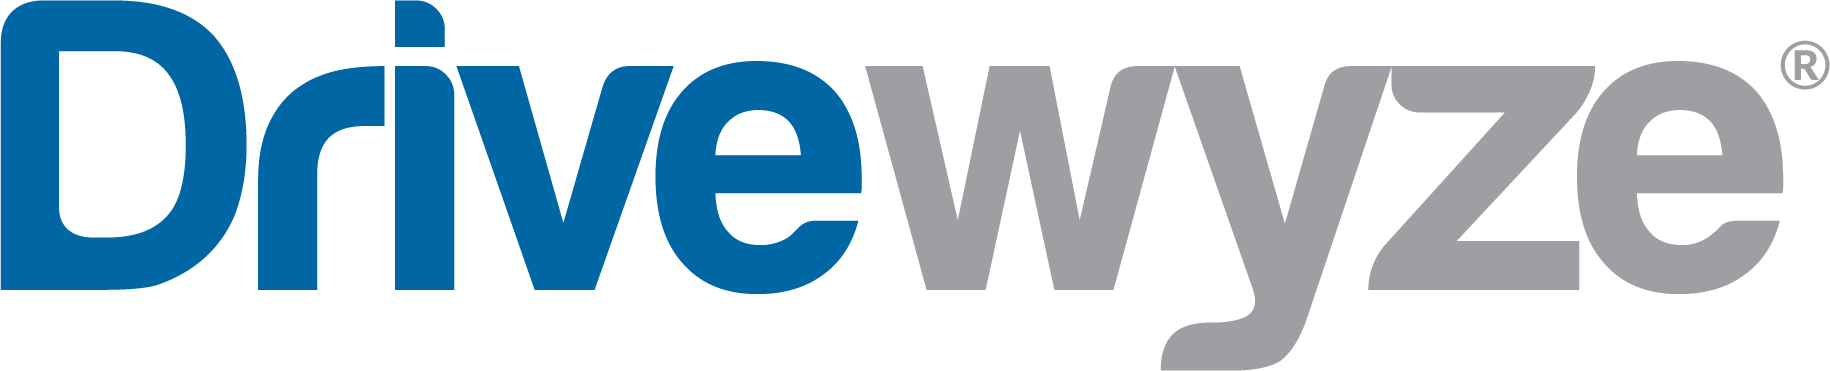 drivewyze-logo